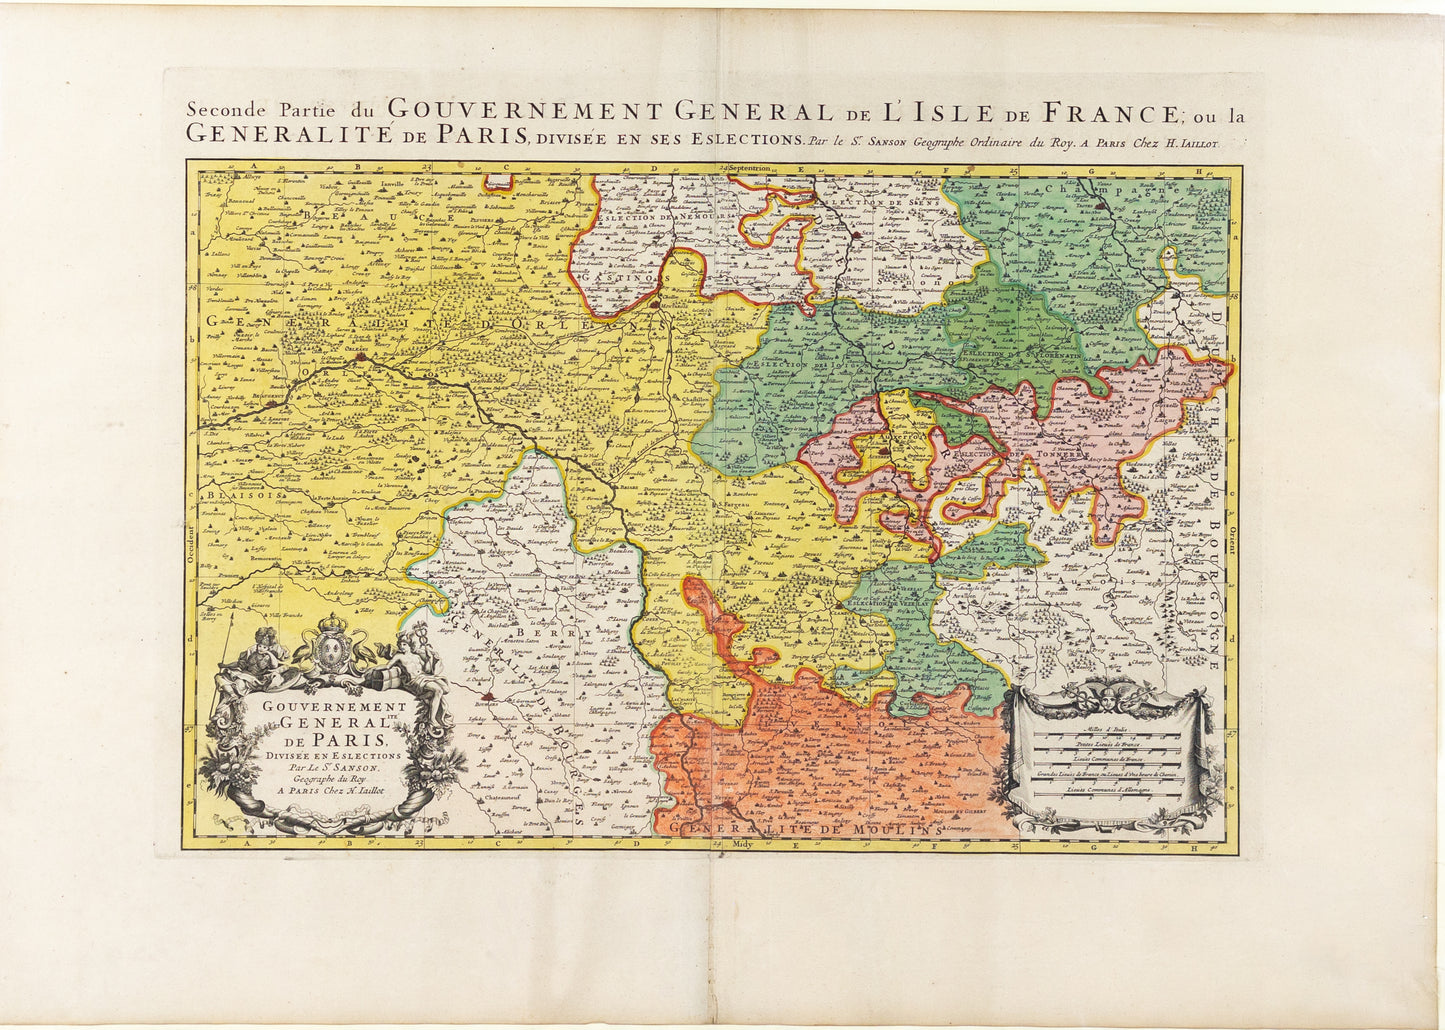 JAILLOT, Alexis-Hubert. Seconde Partie du Gouvernement General de L’Isle de France. Paris: 1692.